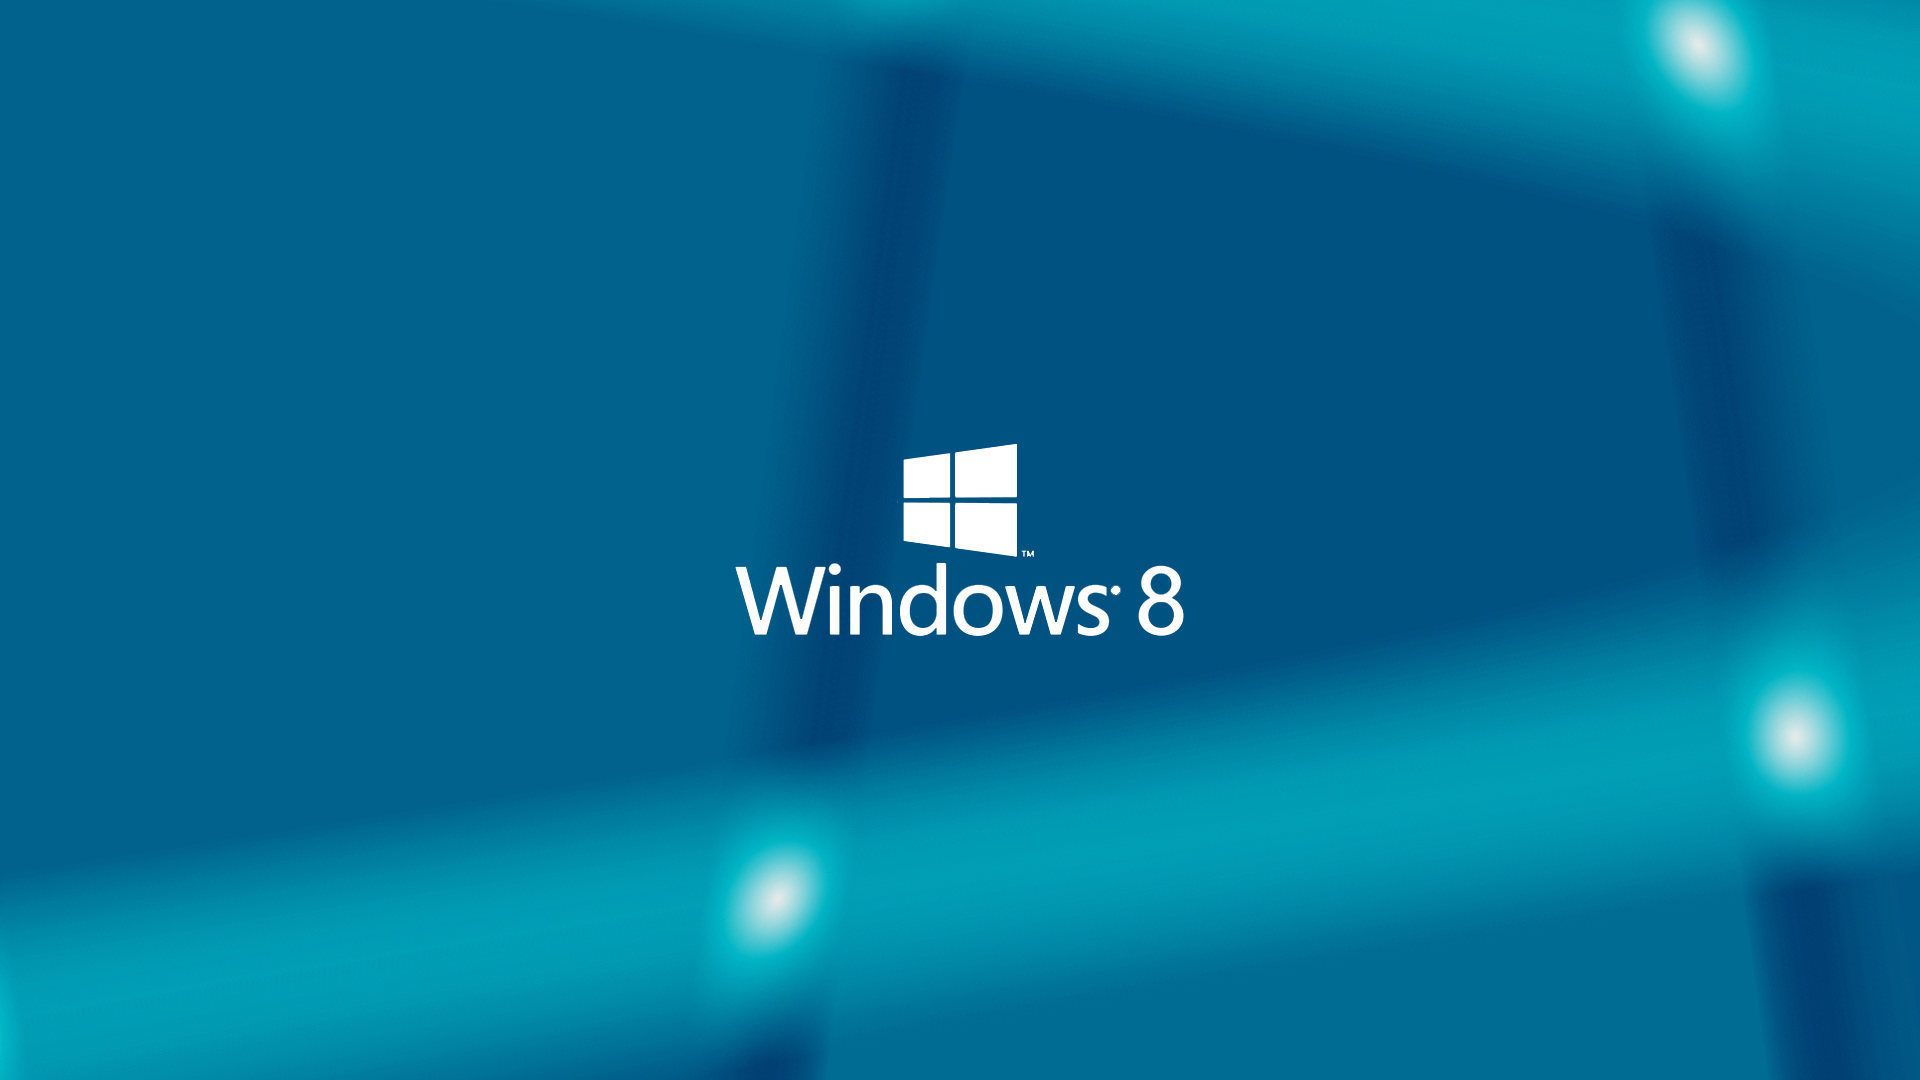 Windows 8 Wallpapers For Desktop   Download Here TechBeasts